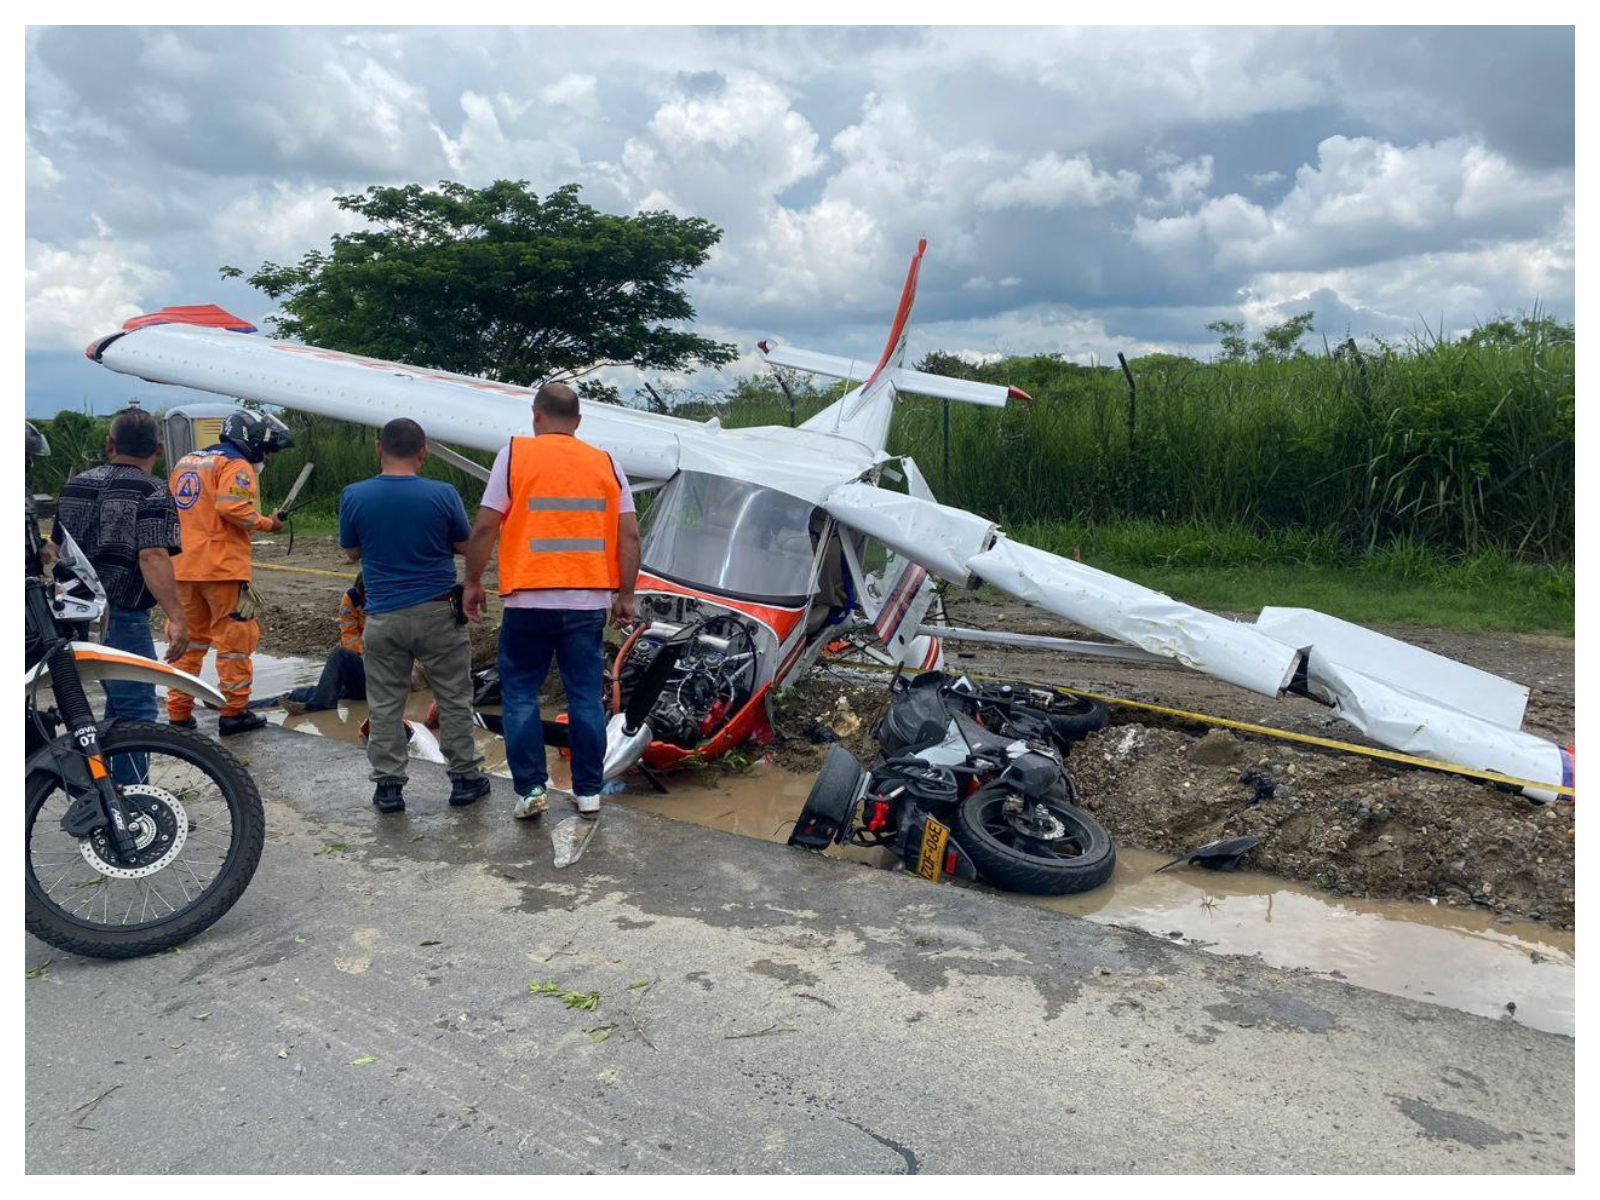 Motociclista herido por accidente con aeronave en el Valle del Cauca habría sido víctima de robo 